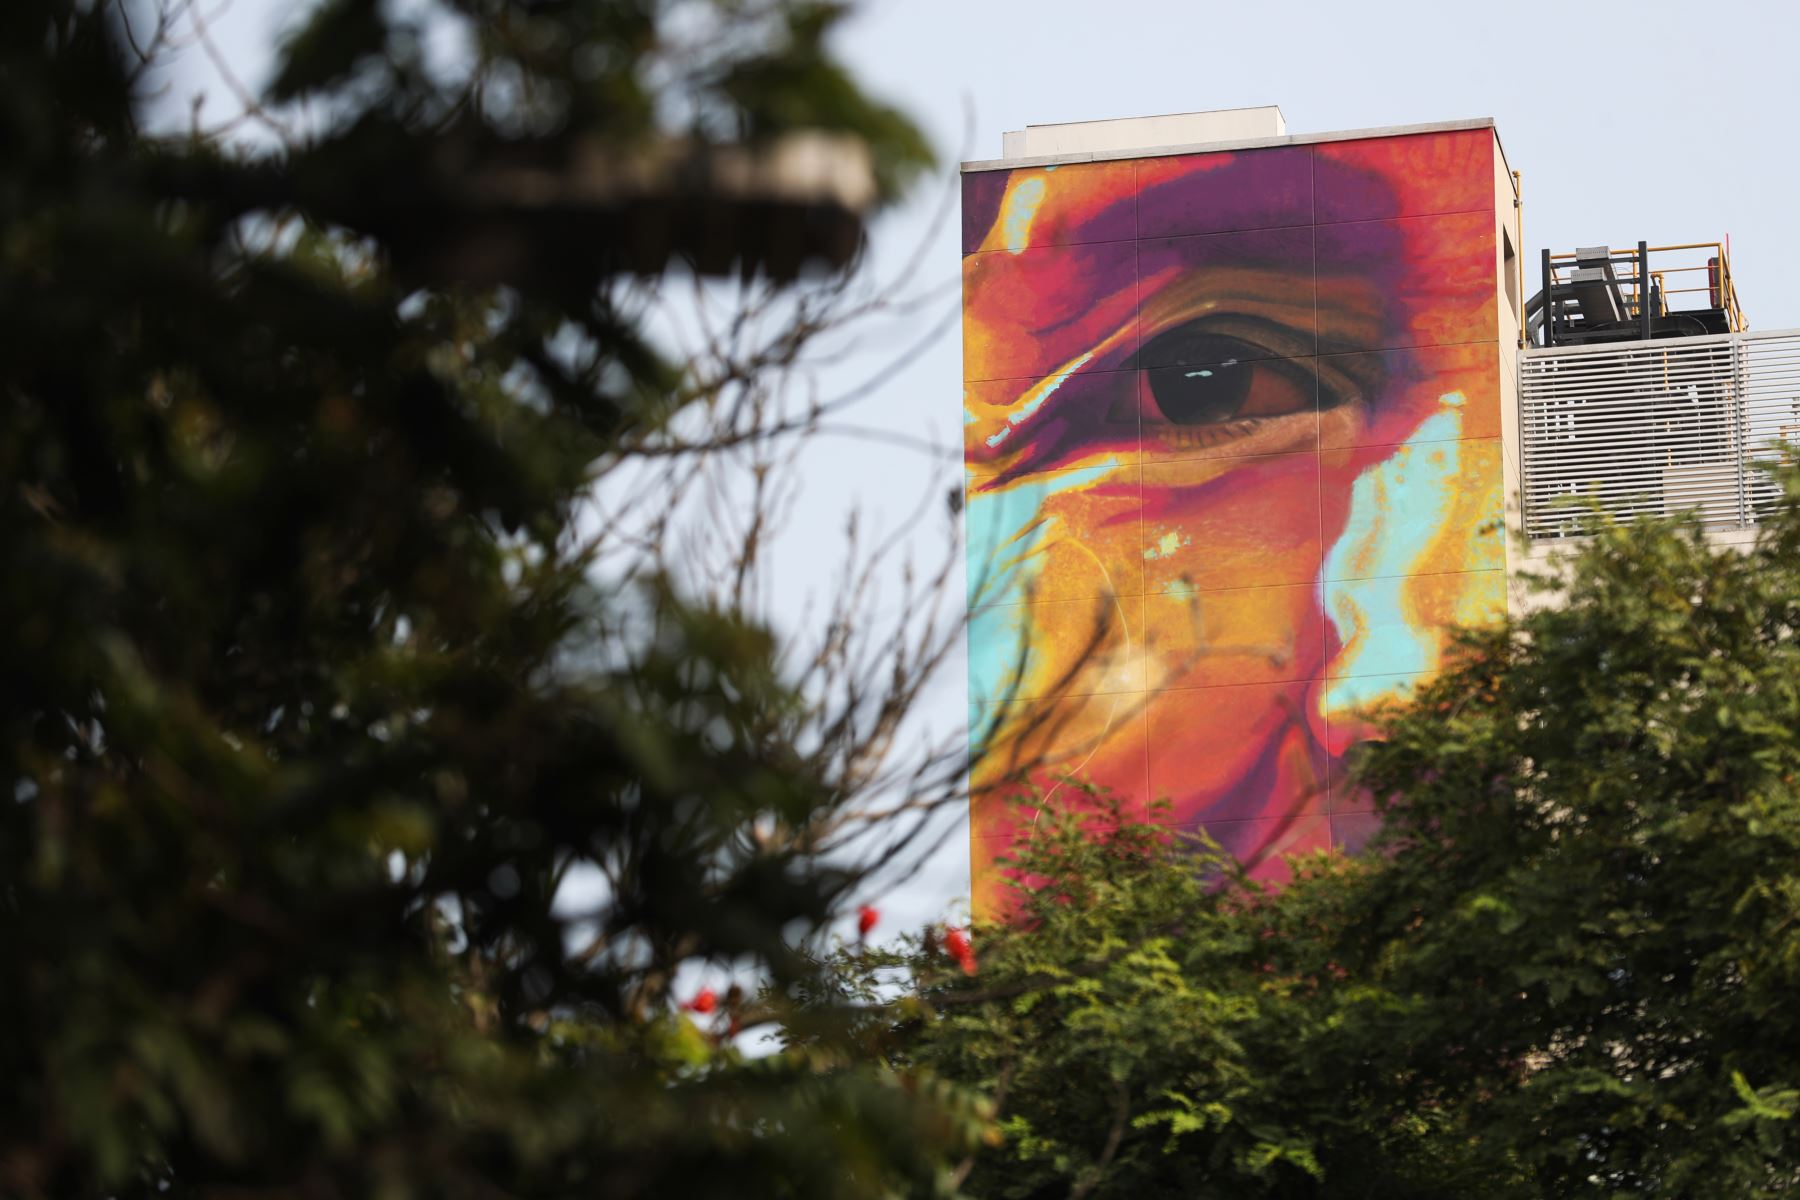 Detalle de mural artístico en Miraflores, ubicado en la cuadra 11 de la Av. Larco. Foto: ANDINA/Daniel Bracamonte